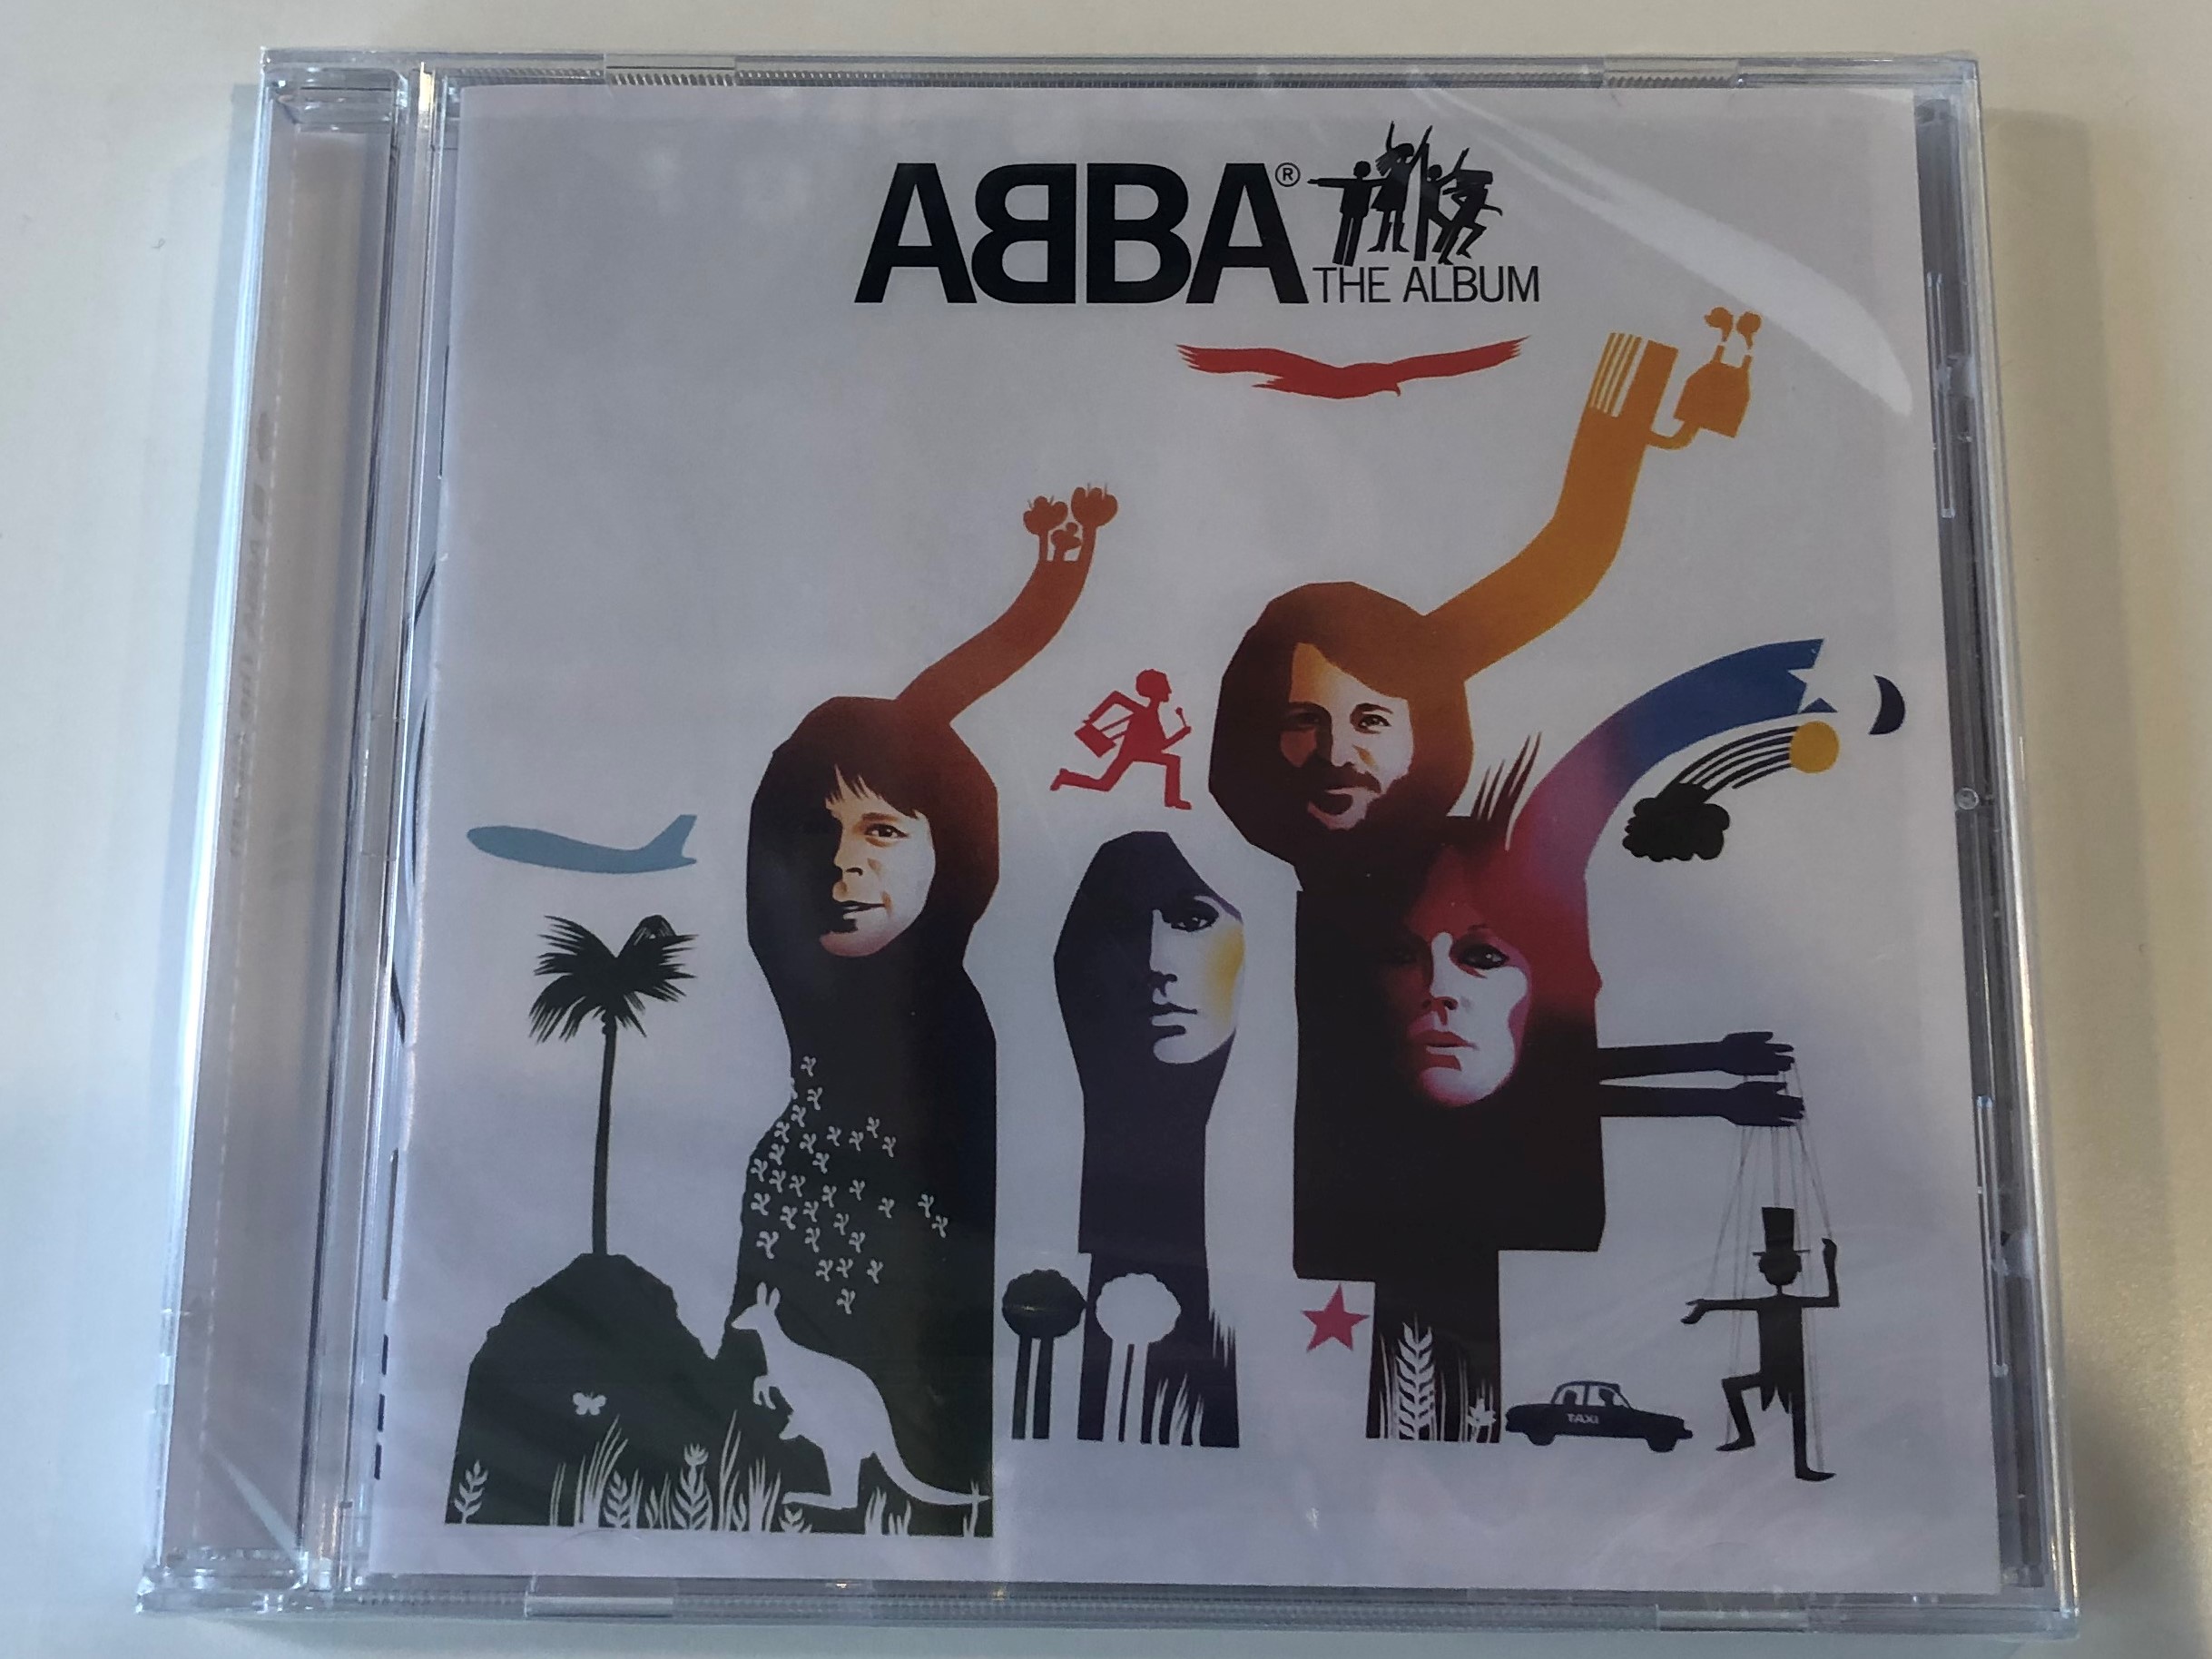 abba-the-album-polar-audio-cd-2001-stereo-mono-549-954-2-1-.jpg